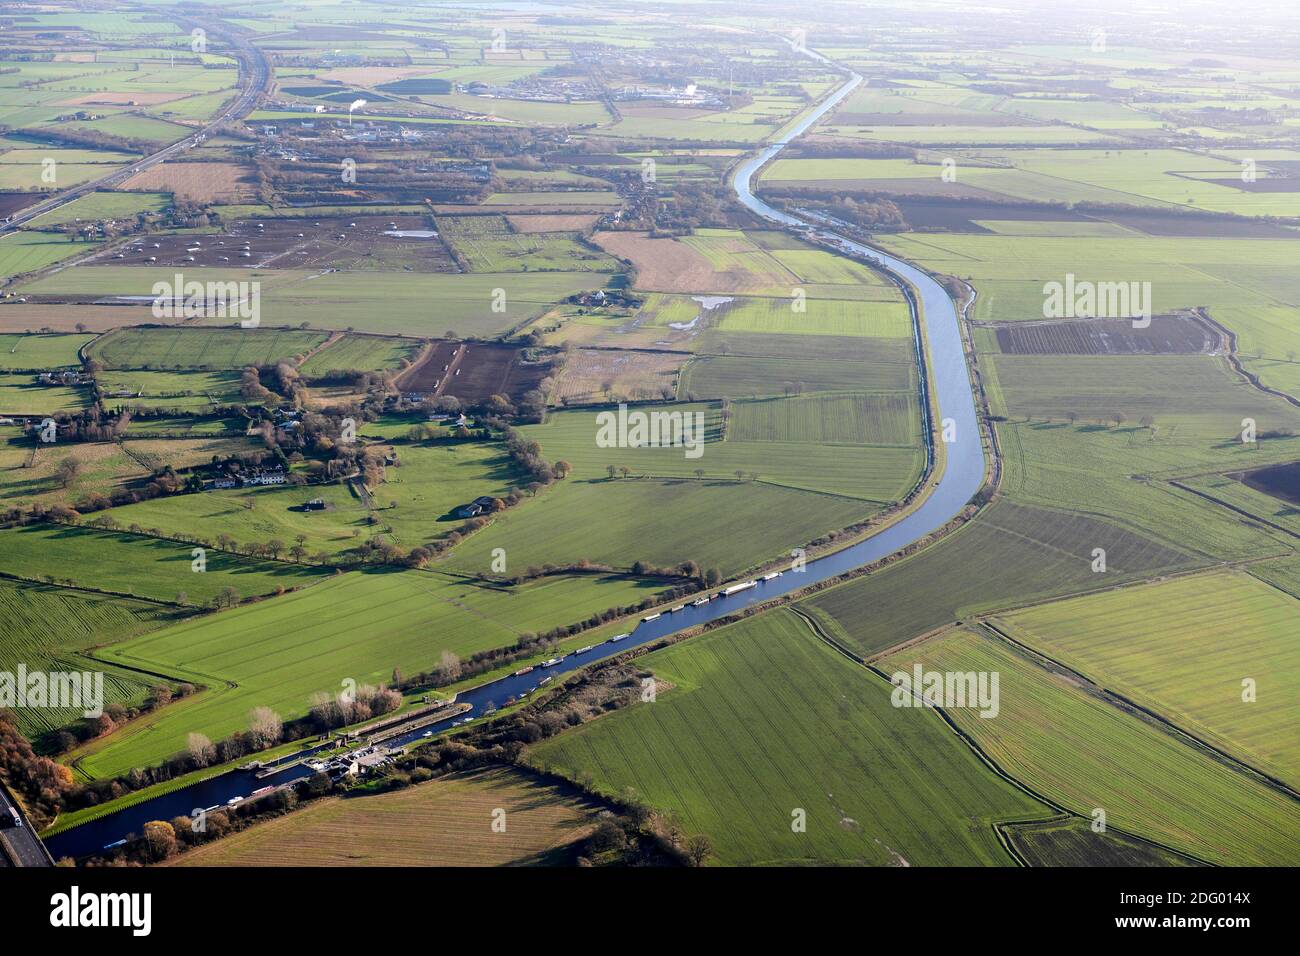 El Aire y el Canal ancho de Calder, disparados desde el aire, en Whitley, al este de Pontefract, North Yorkshire, norte de Inglaterra, Reino Unido, adyacente a la autopista M62 Foto de stock